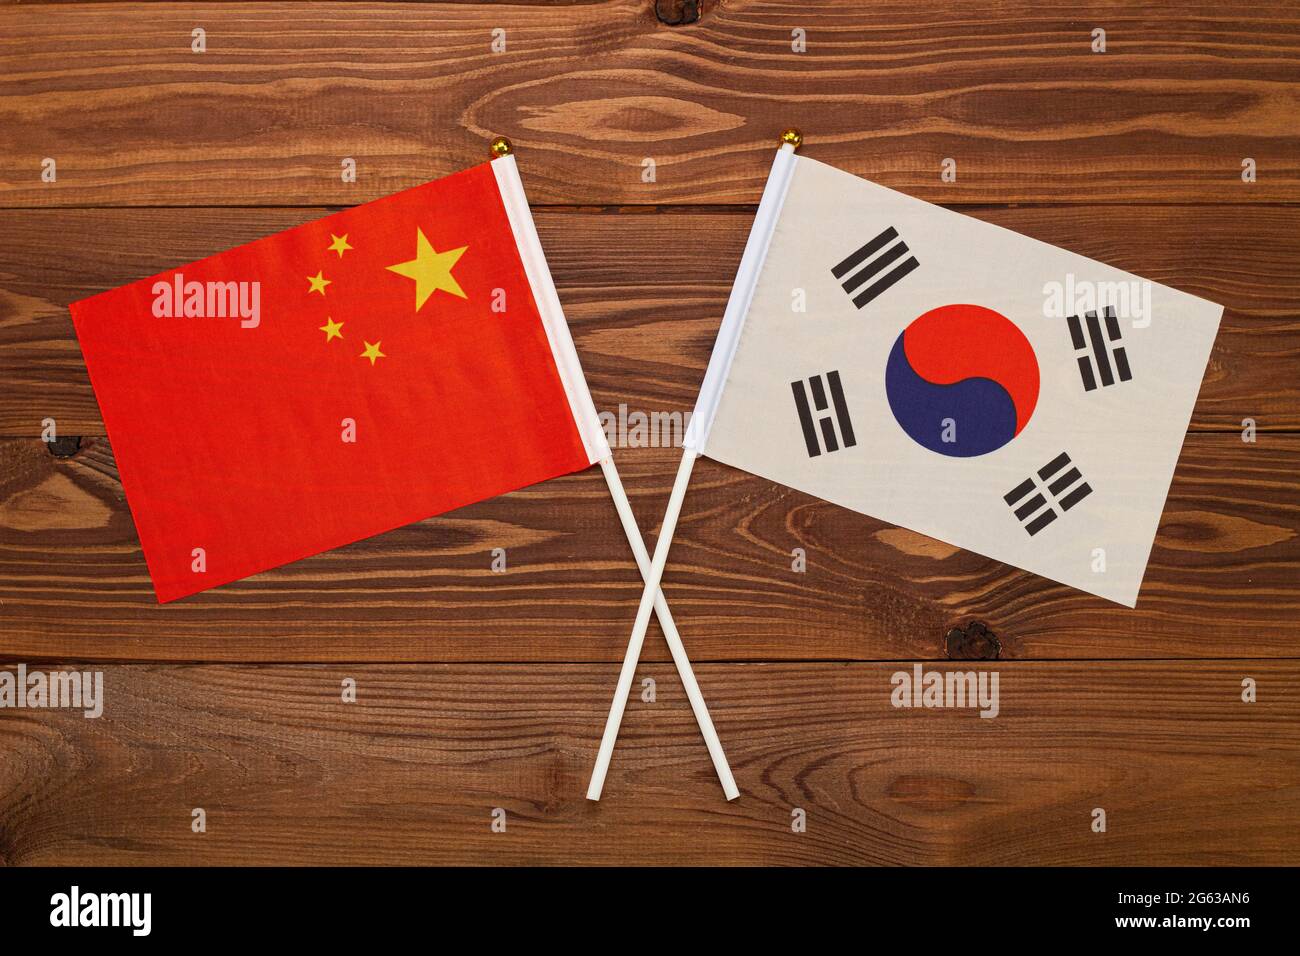 Bandiera della Cina e bandiera della Corea del Sud si incrociavano. L'immagine illustra il rapporto tra i paesi. Fotografia per notizie Foto Stock